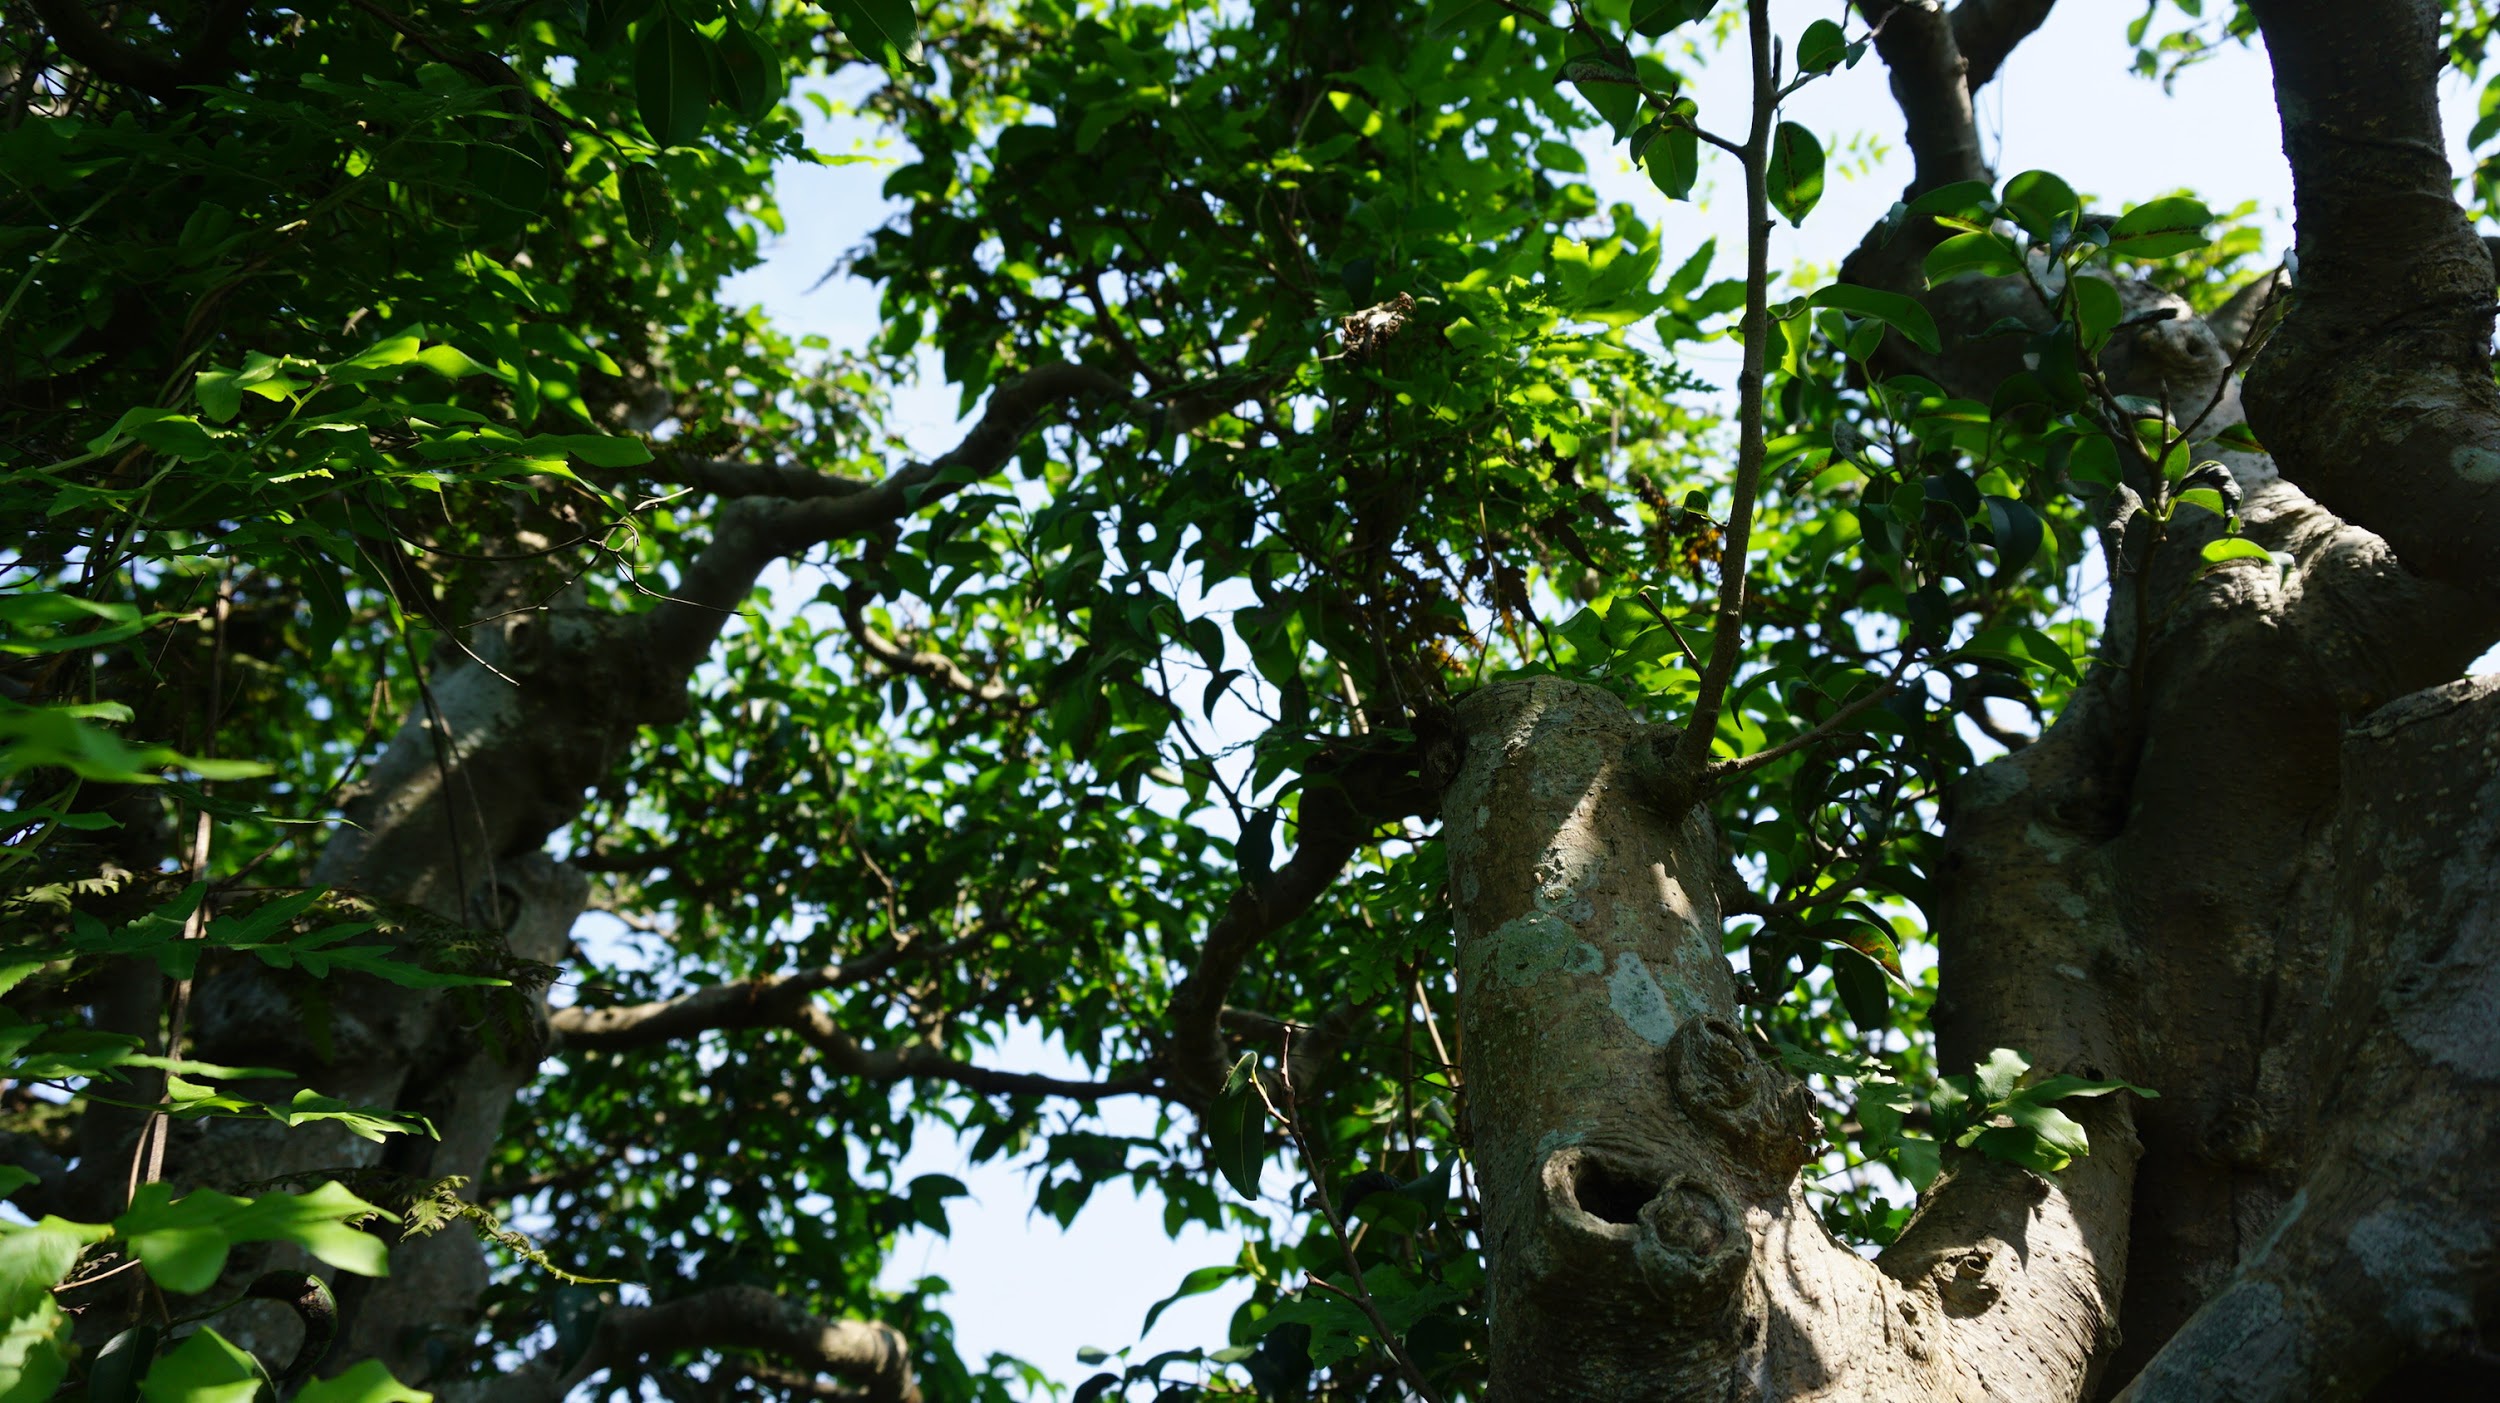 Khu vườn bỏ hoang toàn 'siêu cây' bạc tỷ của đại gia nức tiếng một thời Hang-chuc-goc-co-thu-dang-than-dang-phat-gia-tram-ty-bo-hoang-o-ha-noidocx-1588065444432